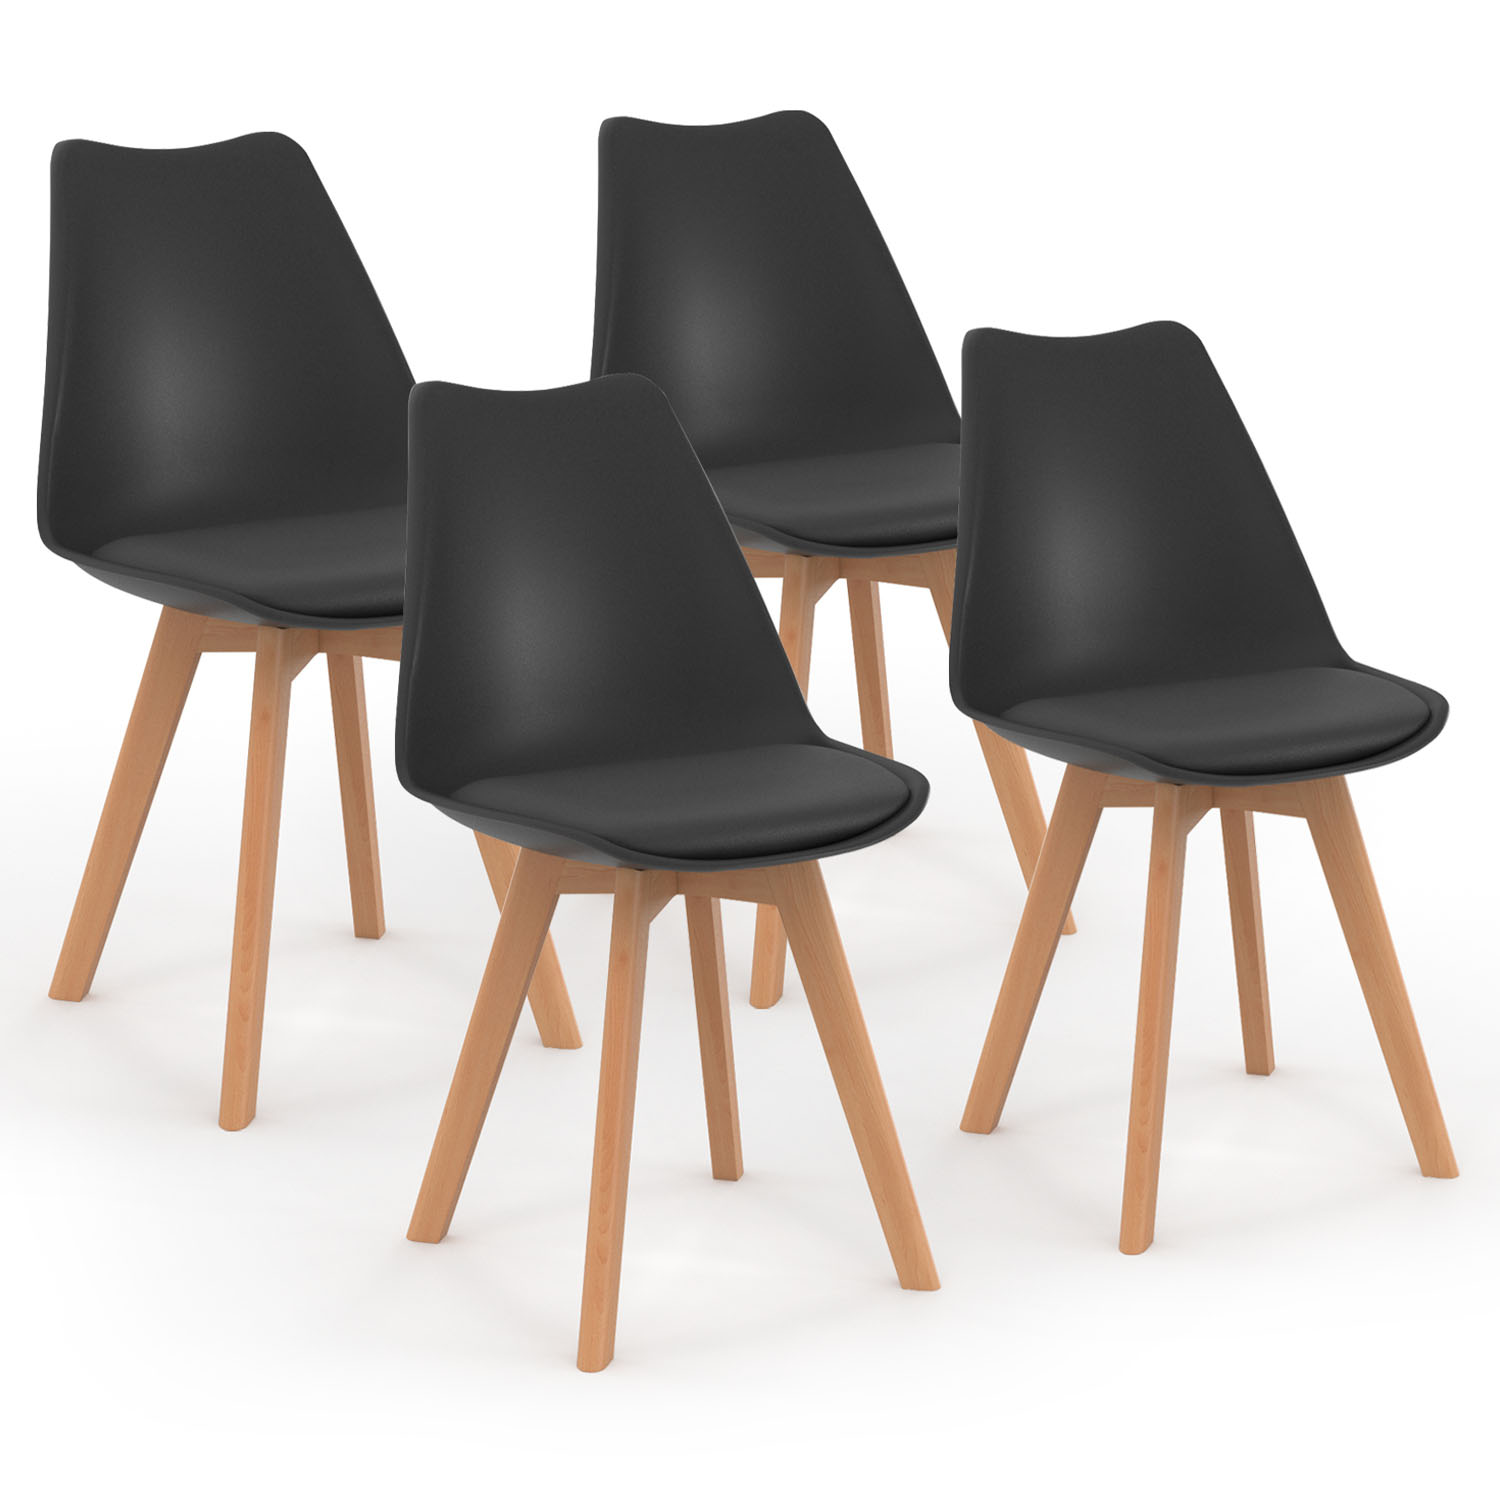 Lot 4 chaises noires contemporaine chaise salle à manger - Ciel & terre